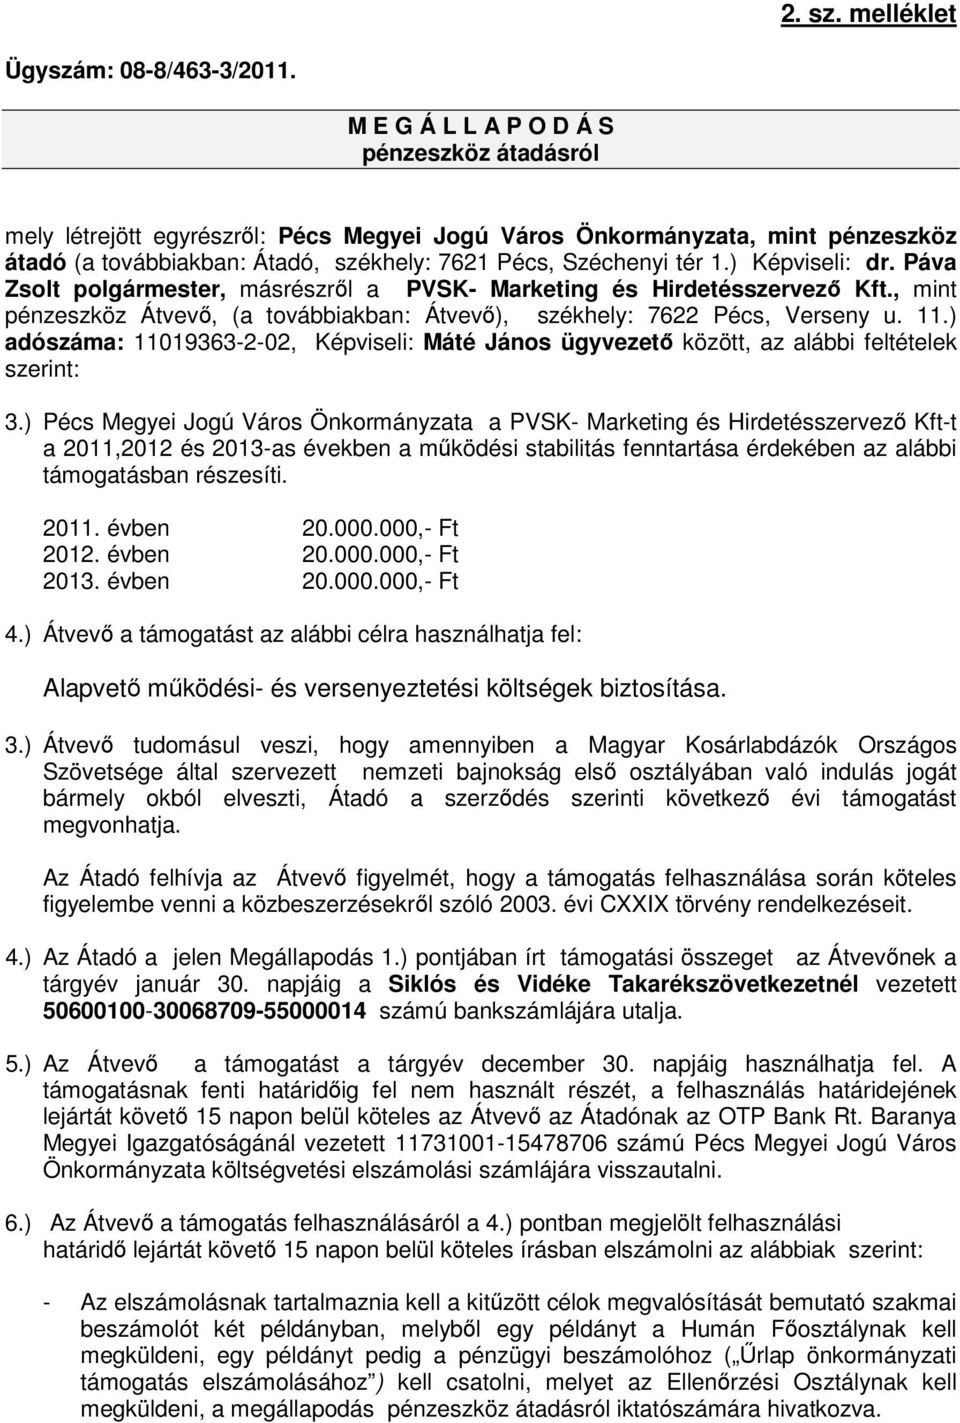 ) Képviseli: dr. Páva Zsolt polgármester, másrészről a PVSK- Marketing és Hirdetésszervező Kft., mint pénzeszköz Átvevő, (a továbbiakban: Átvevő), székhely: 7622 Pécs, Verseny u. 11.